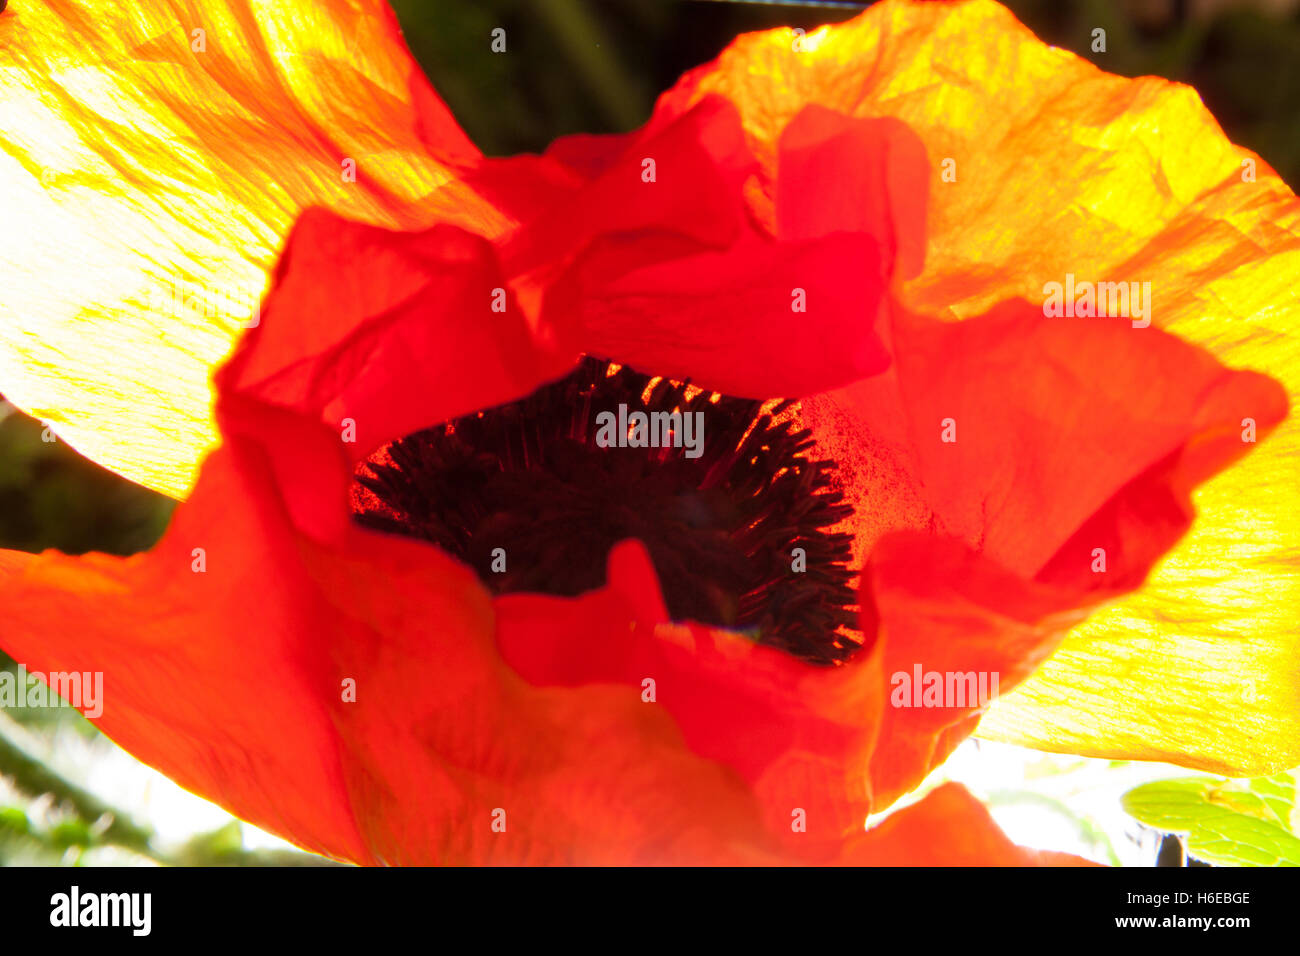 Fotografia astratta di un fiore di papavero, Papaveroideae della famiglia Papaveraceae, forte retroilluminazione, giallo arancio bianco nero Foto Stock